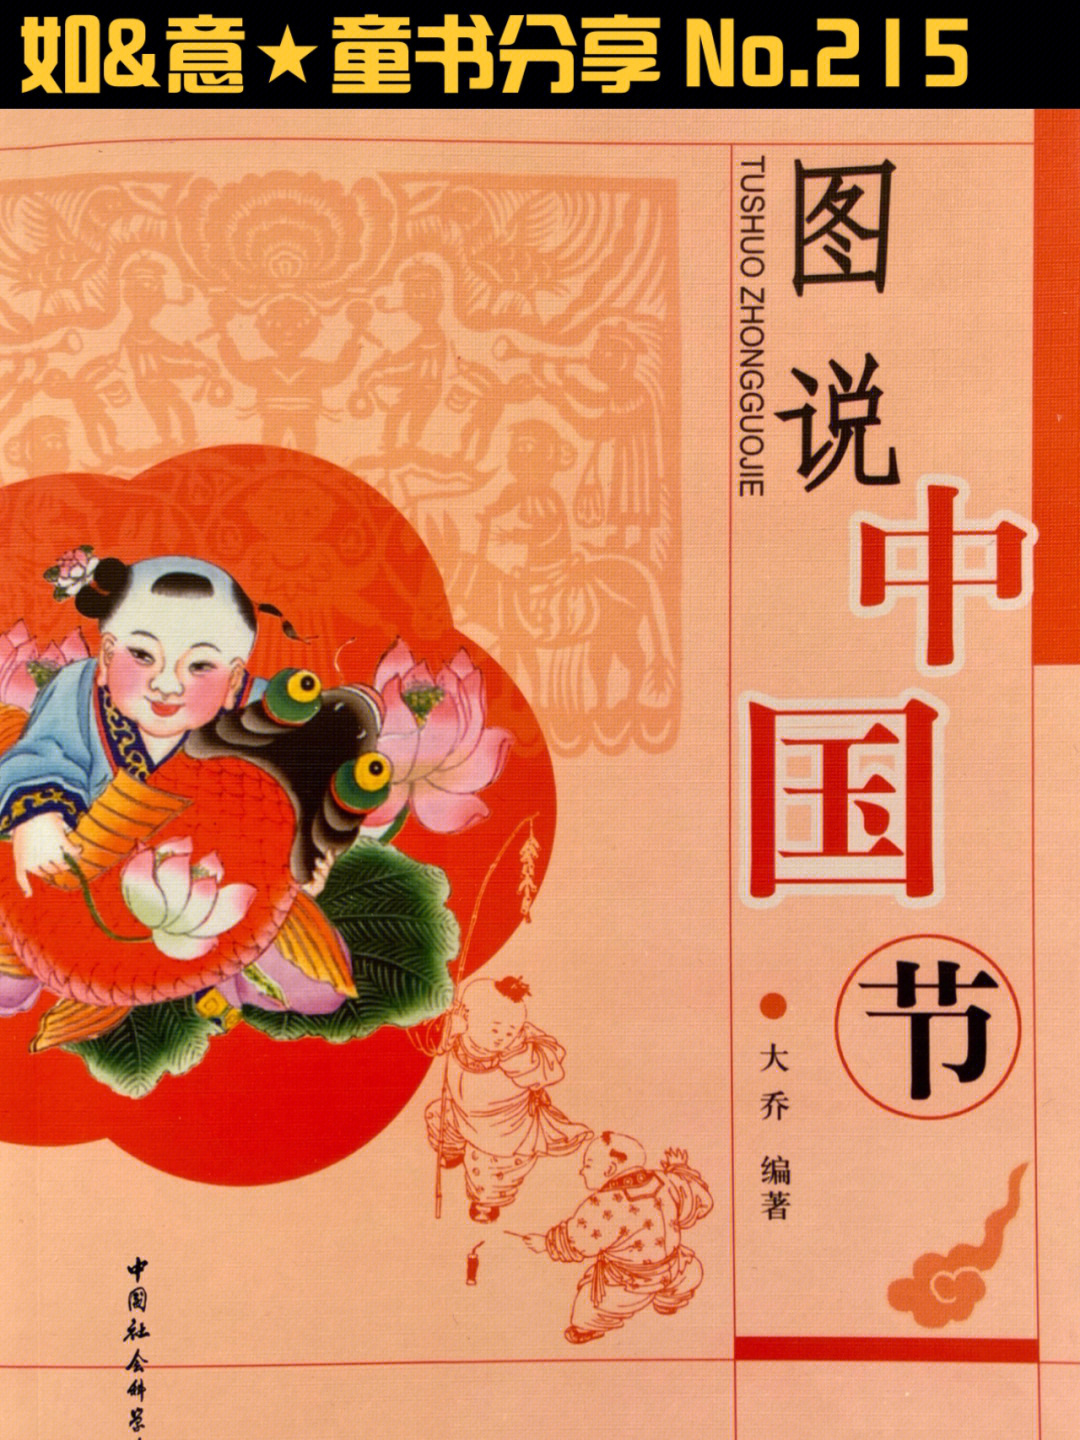 《图说中国节》节日文化是中华民族文化的重要组成部分